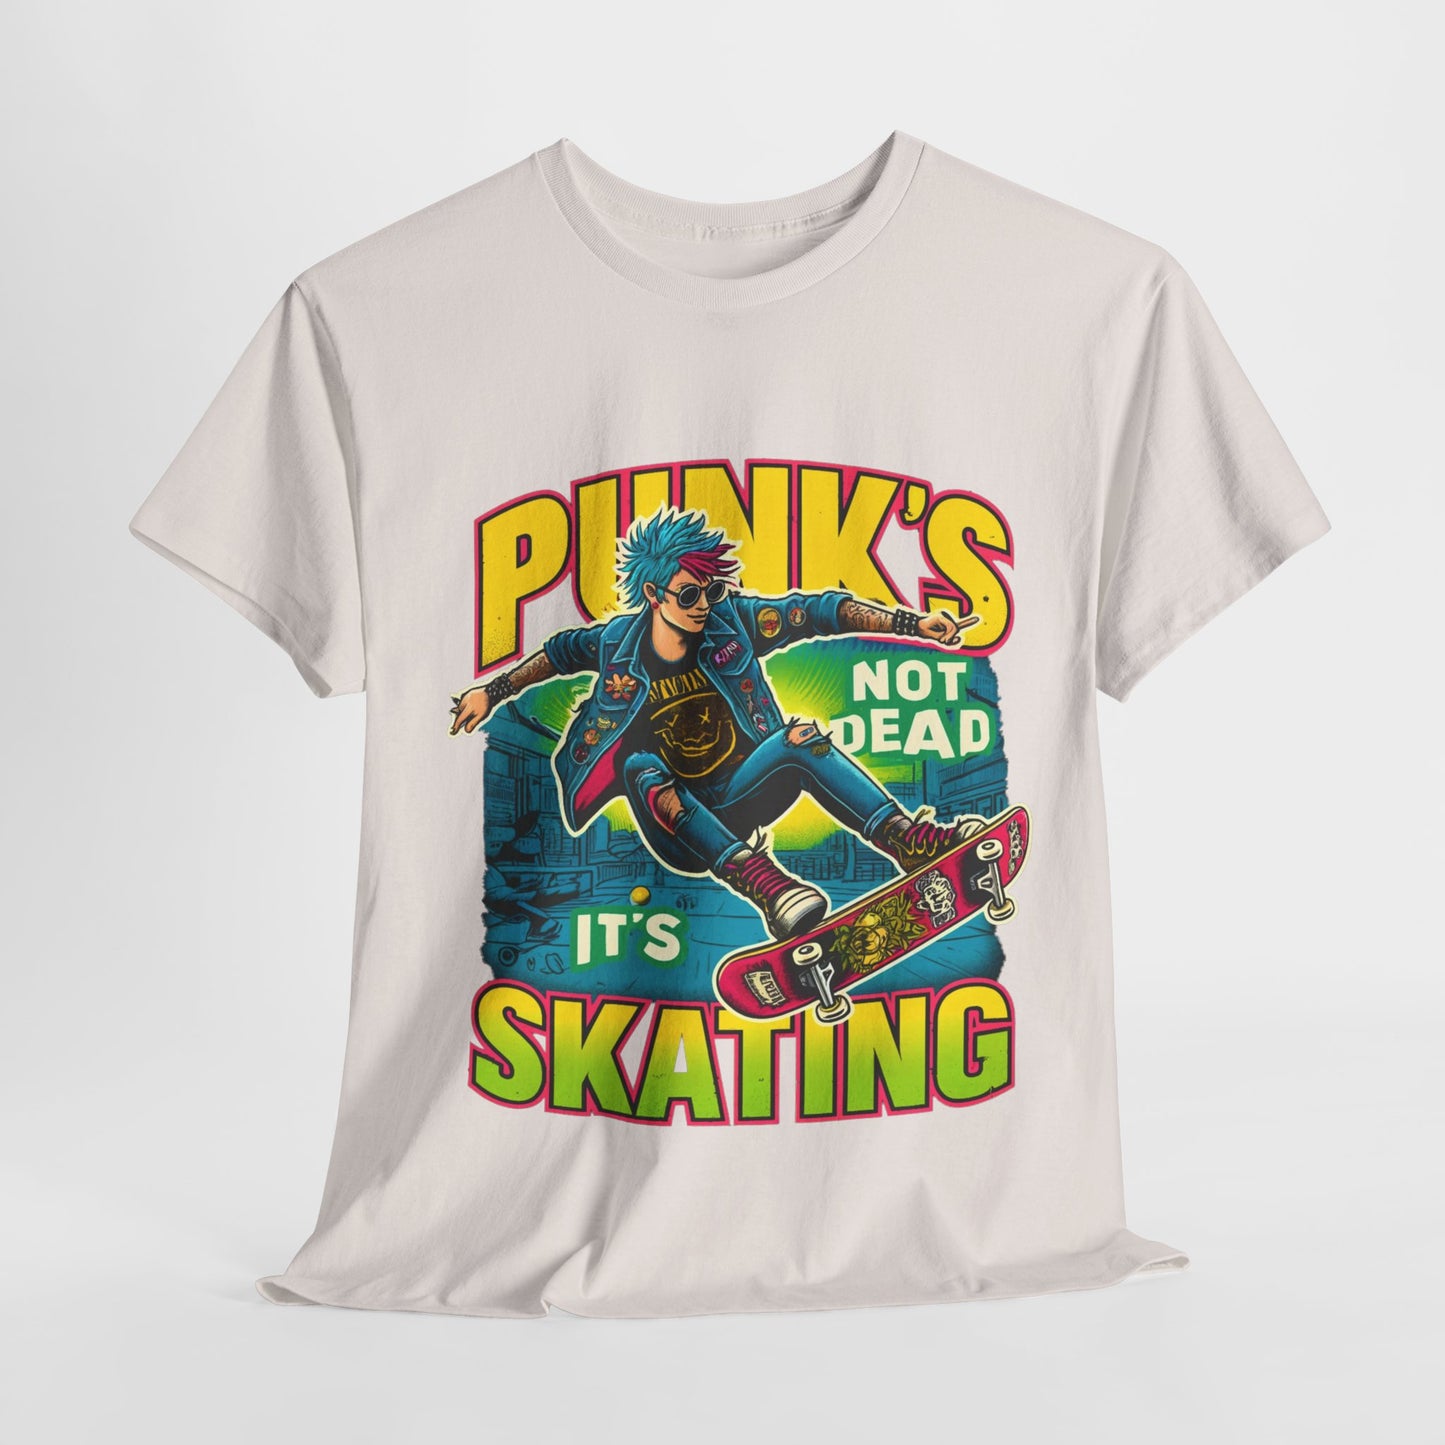 Y.M.L.Y. "Punk's Not Dead, It's Skating" T-shirt Skate punk T-shirt Skateboarding T-shirt